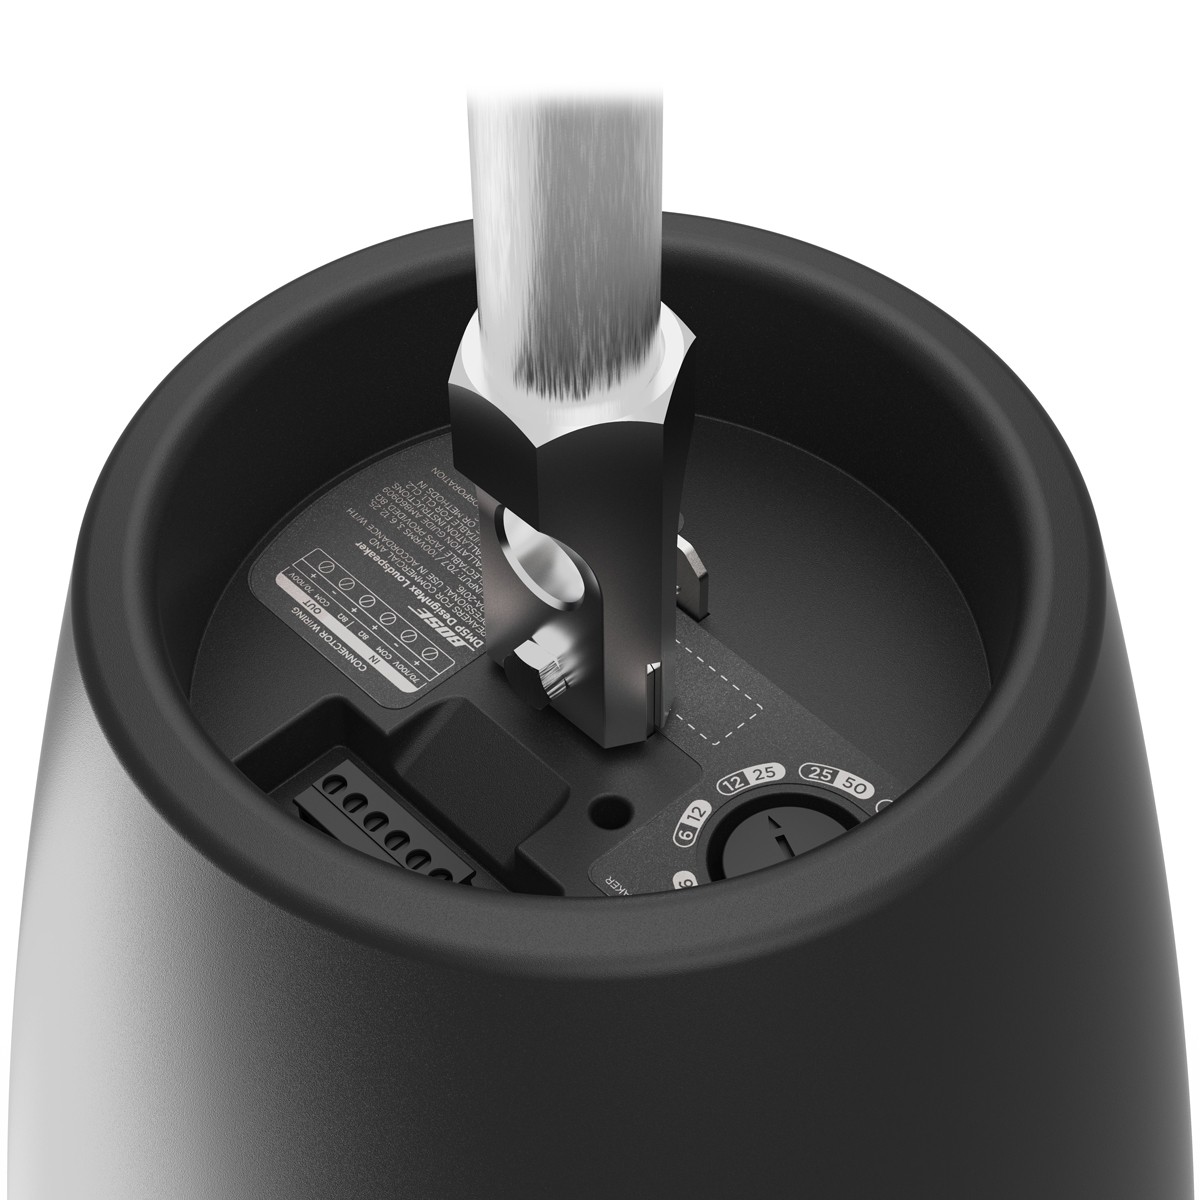 Bose DesignMax Pendant Loudspeaker Conduit Adapter